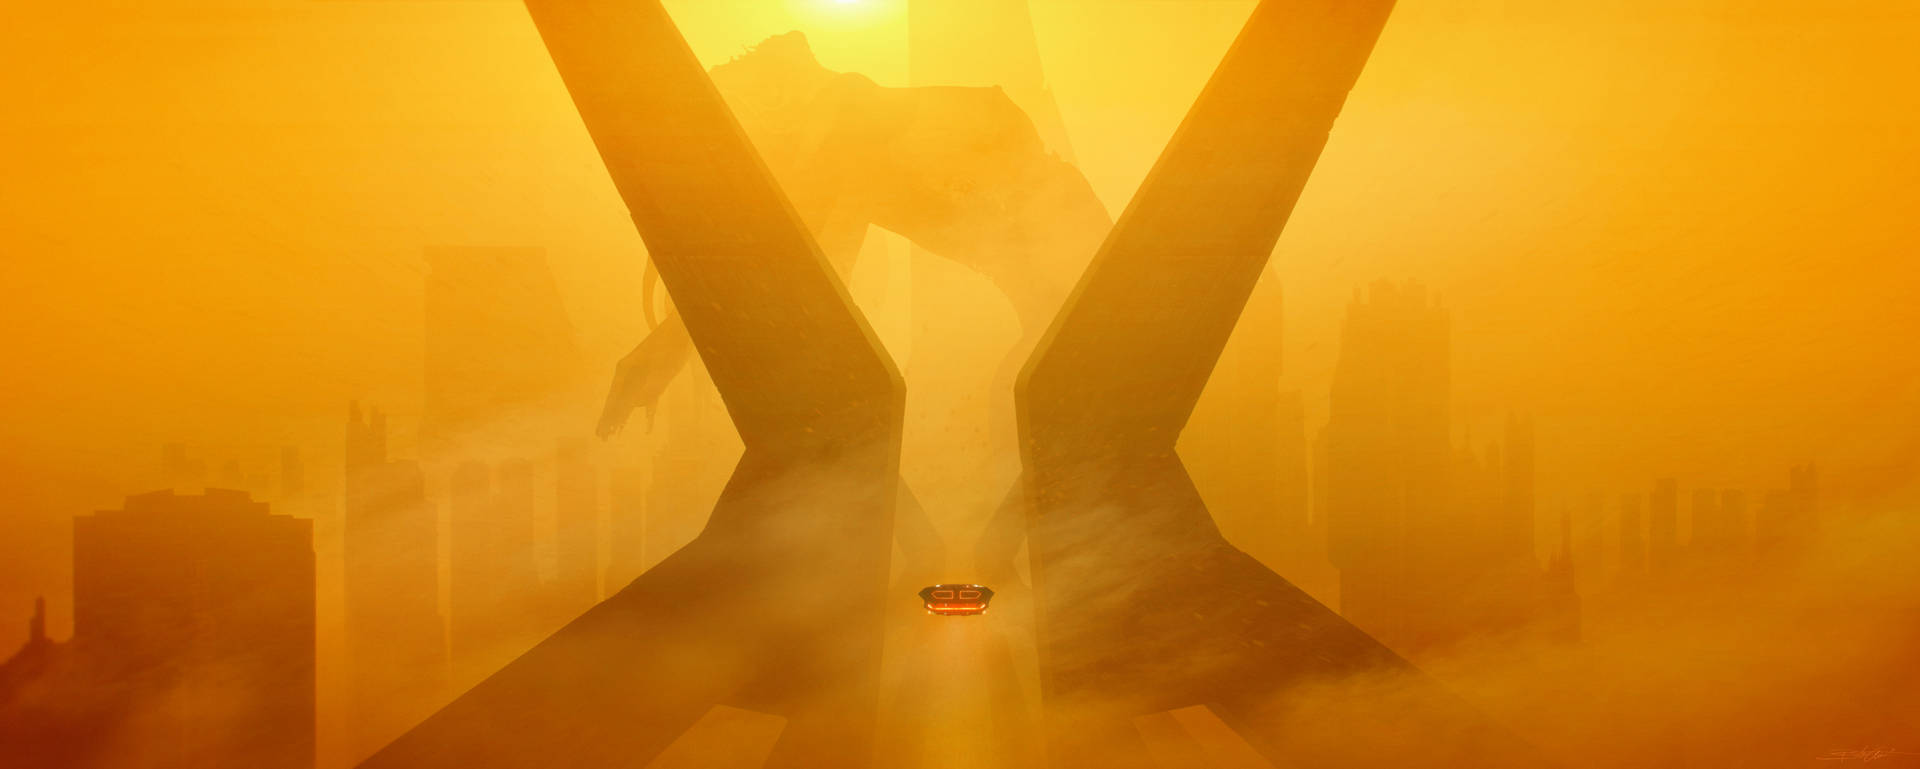 Yellow Aesthetic Spinner Blade Runner 2049 4k Background